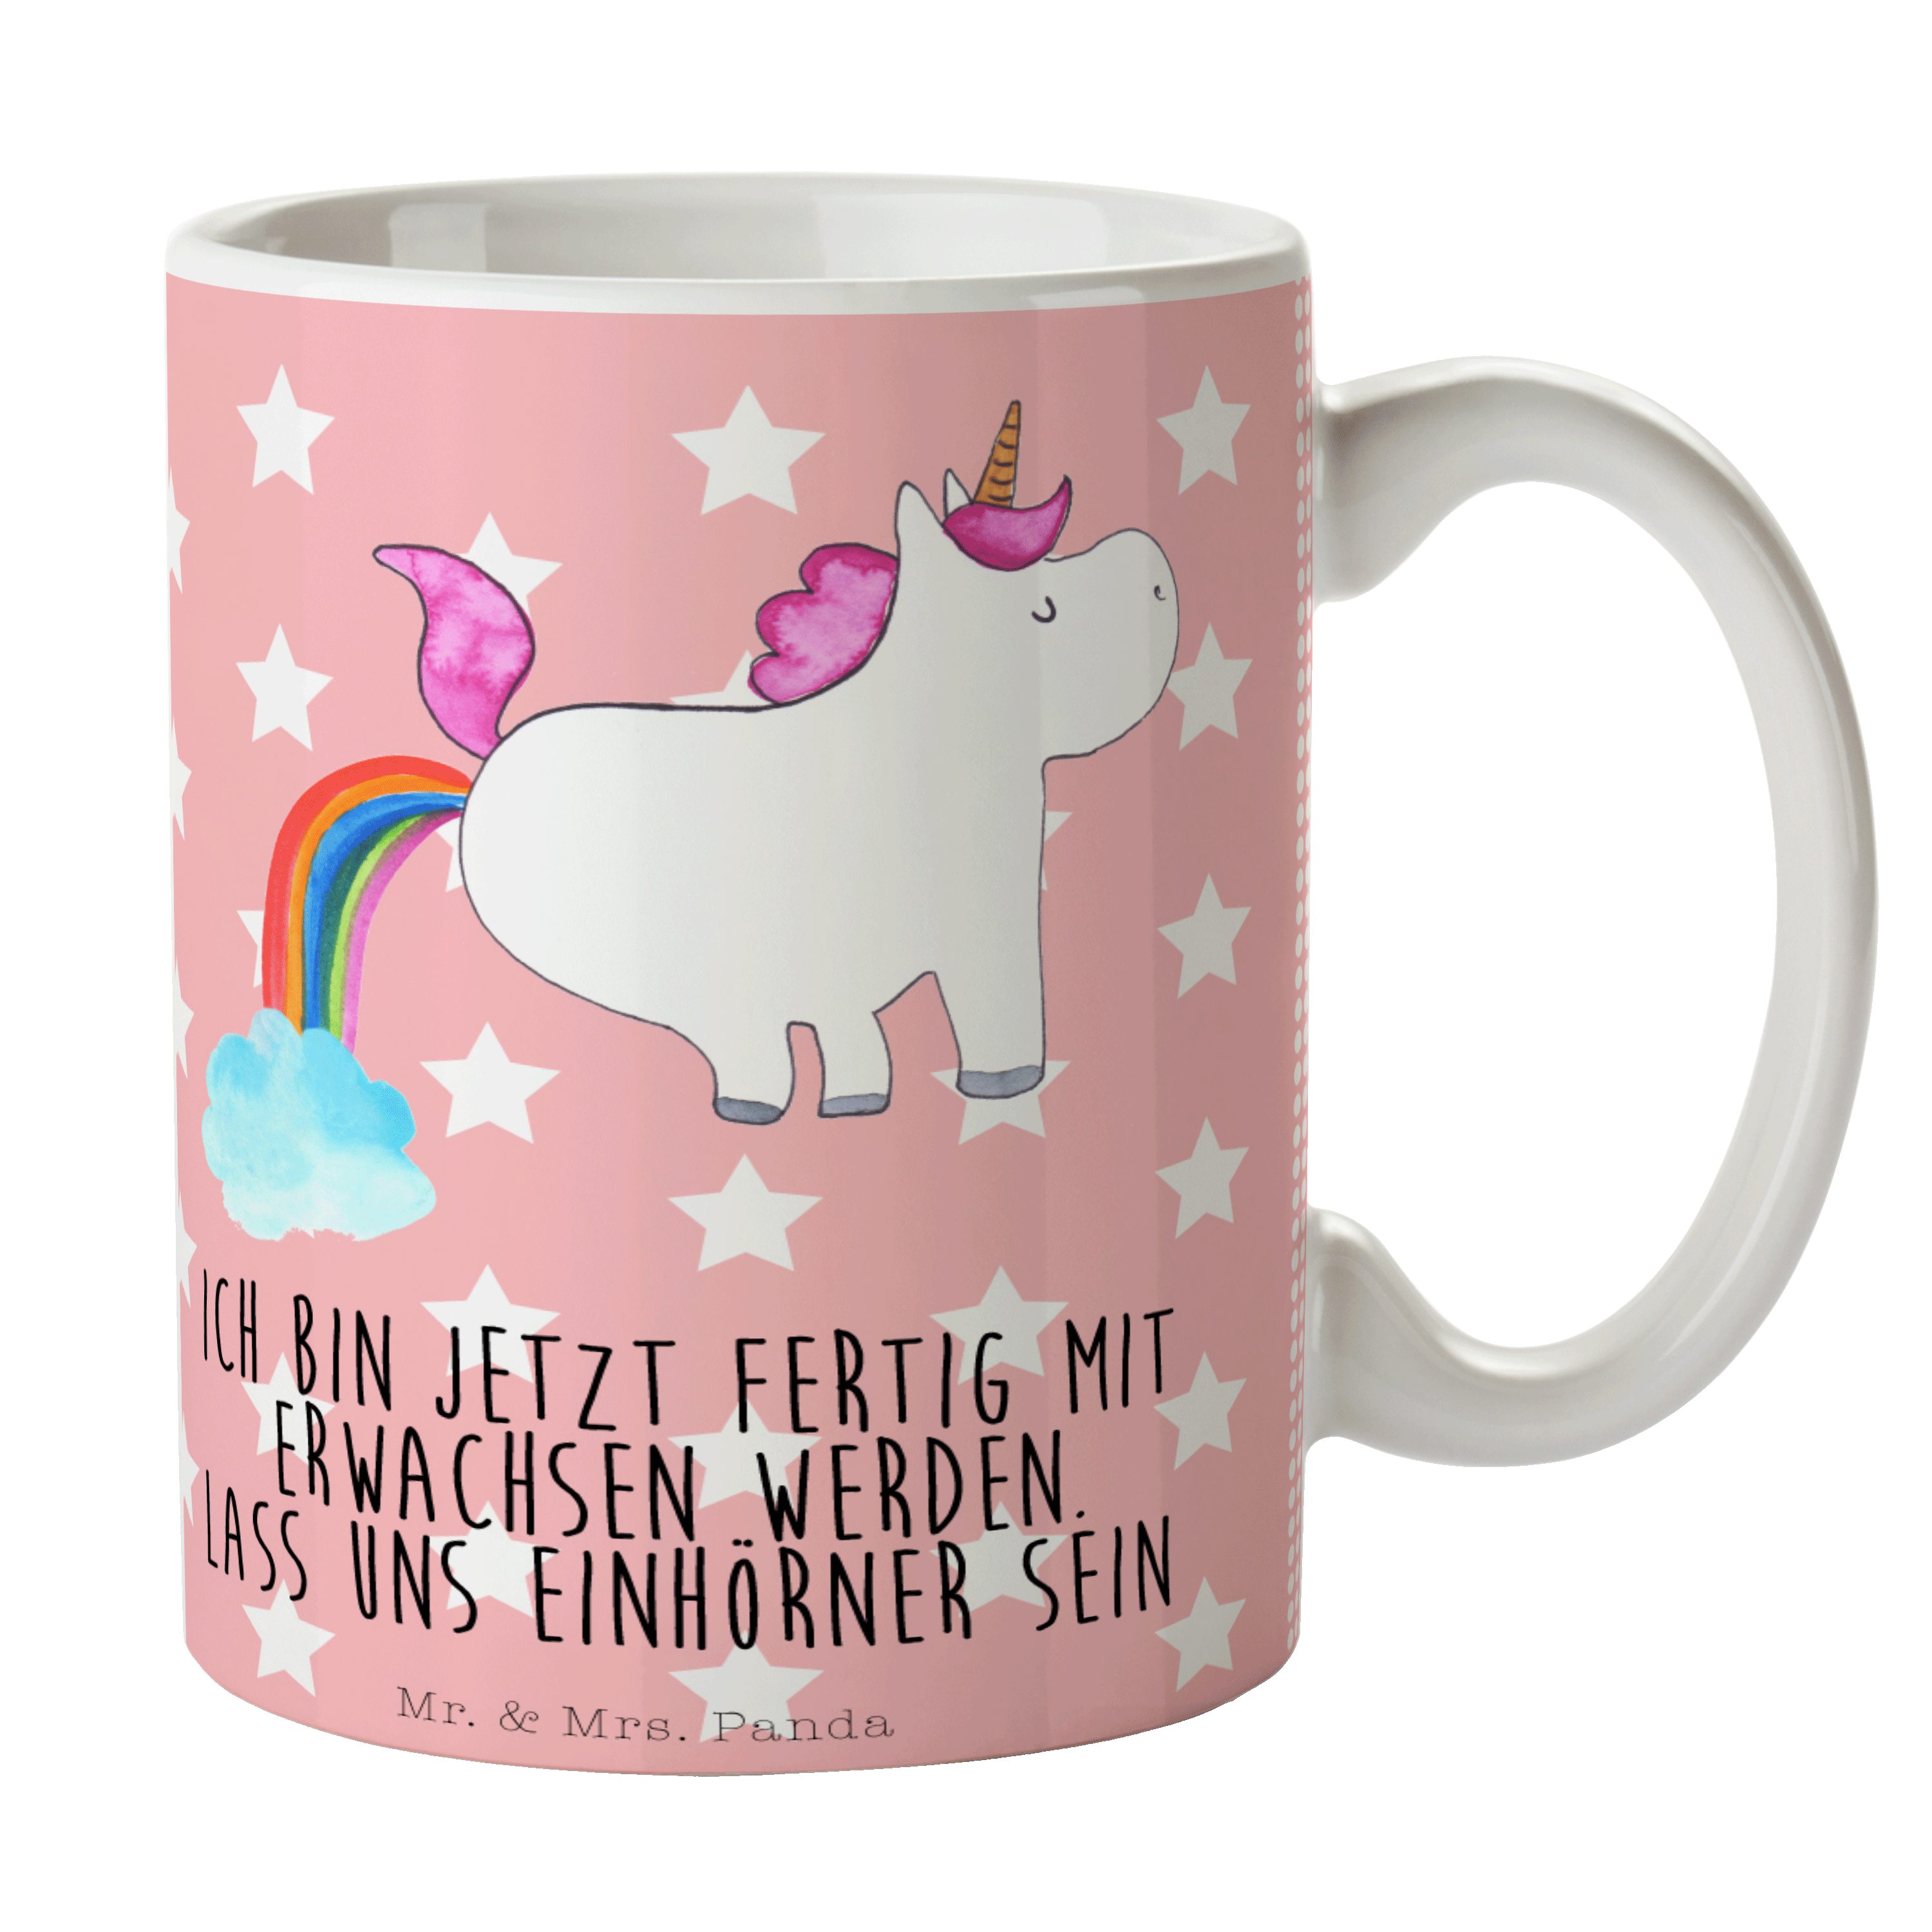 Mr. & Mrs. Panda Tasse Einhorn Pupsend - Rot Pastell - Geschenk, Geschenk Tasse, Becher, Kaf, Keramik